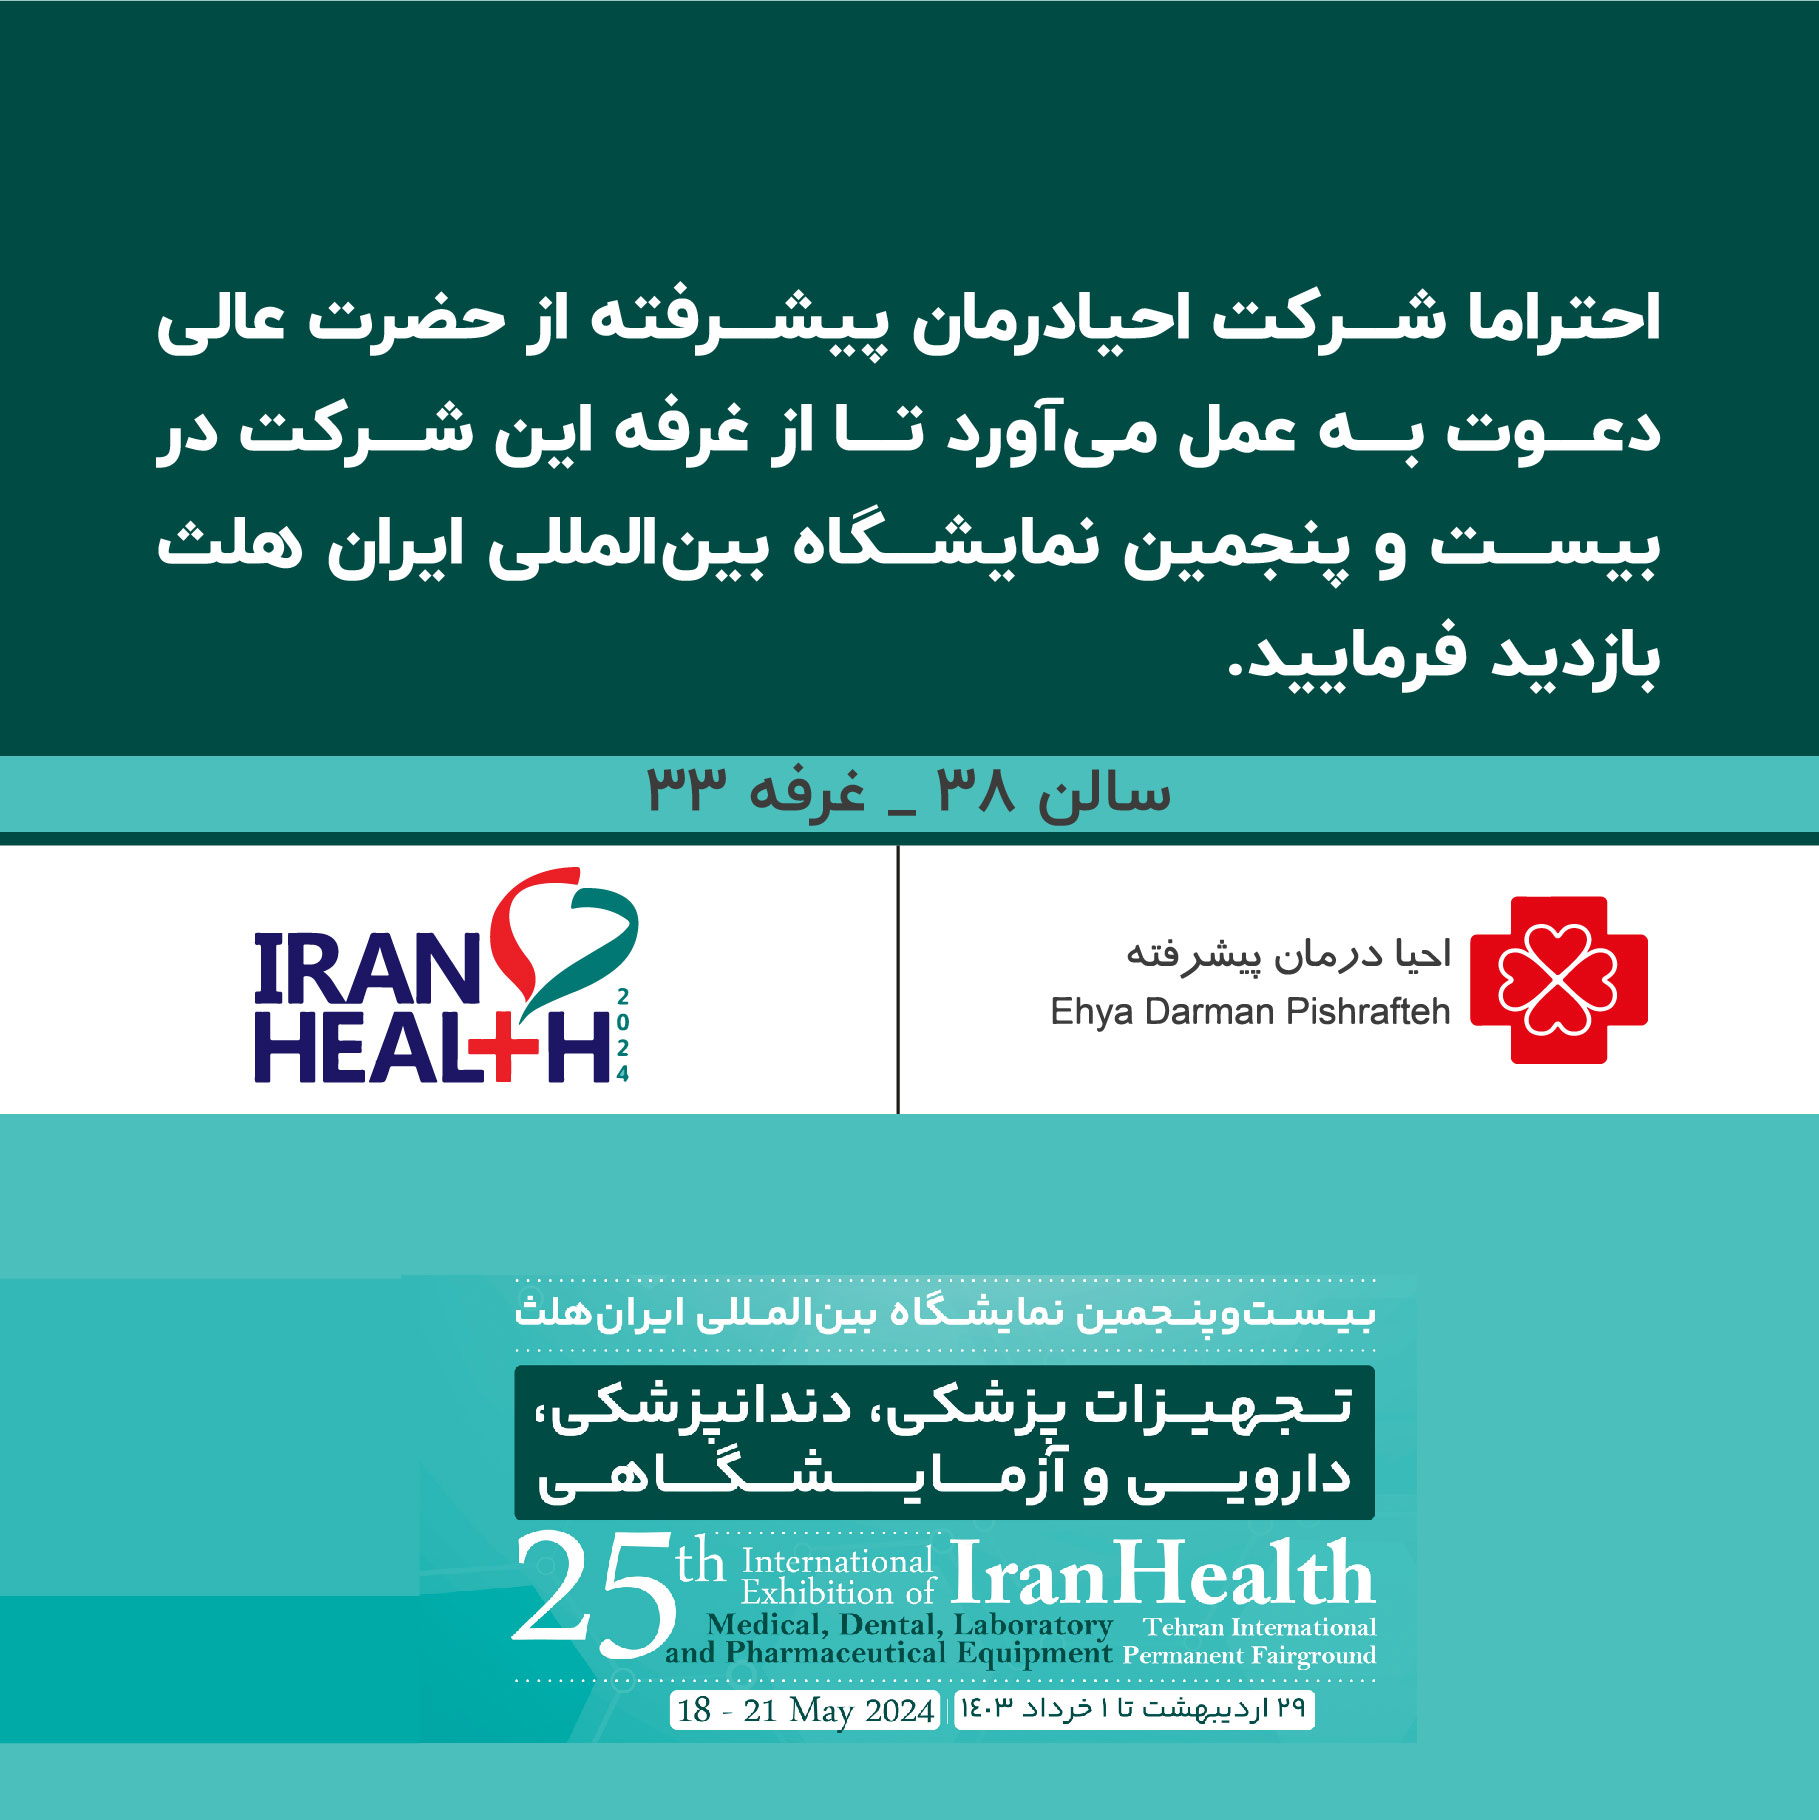 شرکت احیا درمان پیشرفته در بیست و پنجمین نمایشگاه ایران هلث پذیرای شما عزیزان خواهد بود